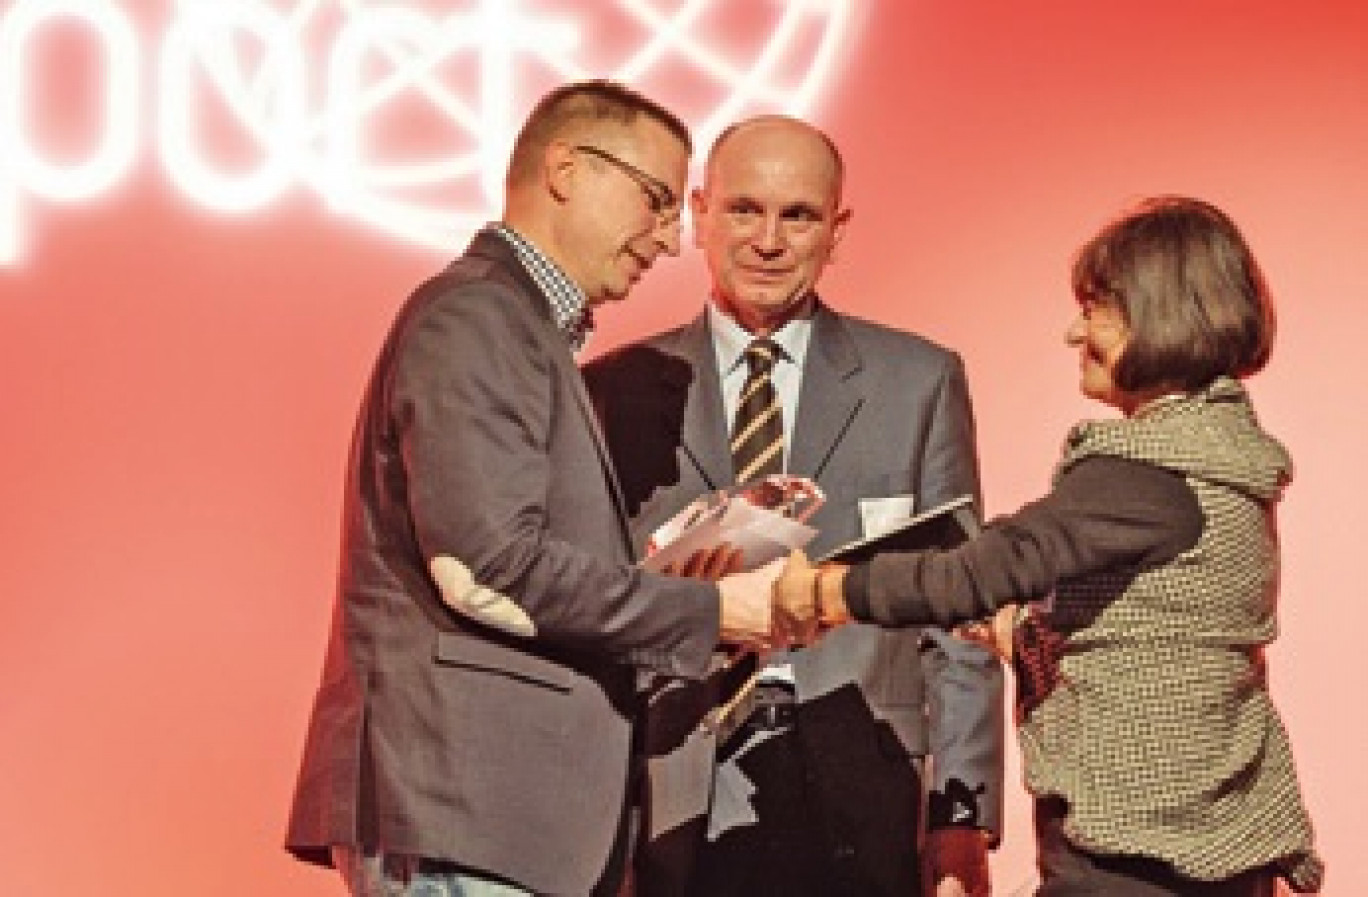 La société Scotler/Care and Comfort à Villeneuve-d’Ascq reçoit le trophée Leader de demain.